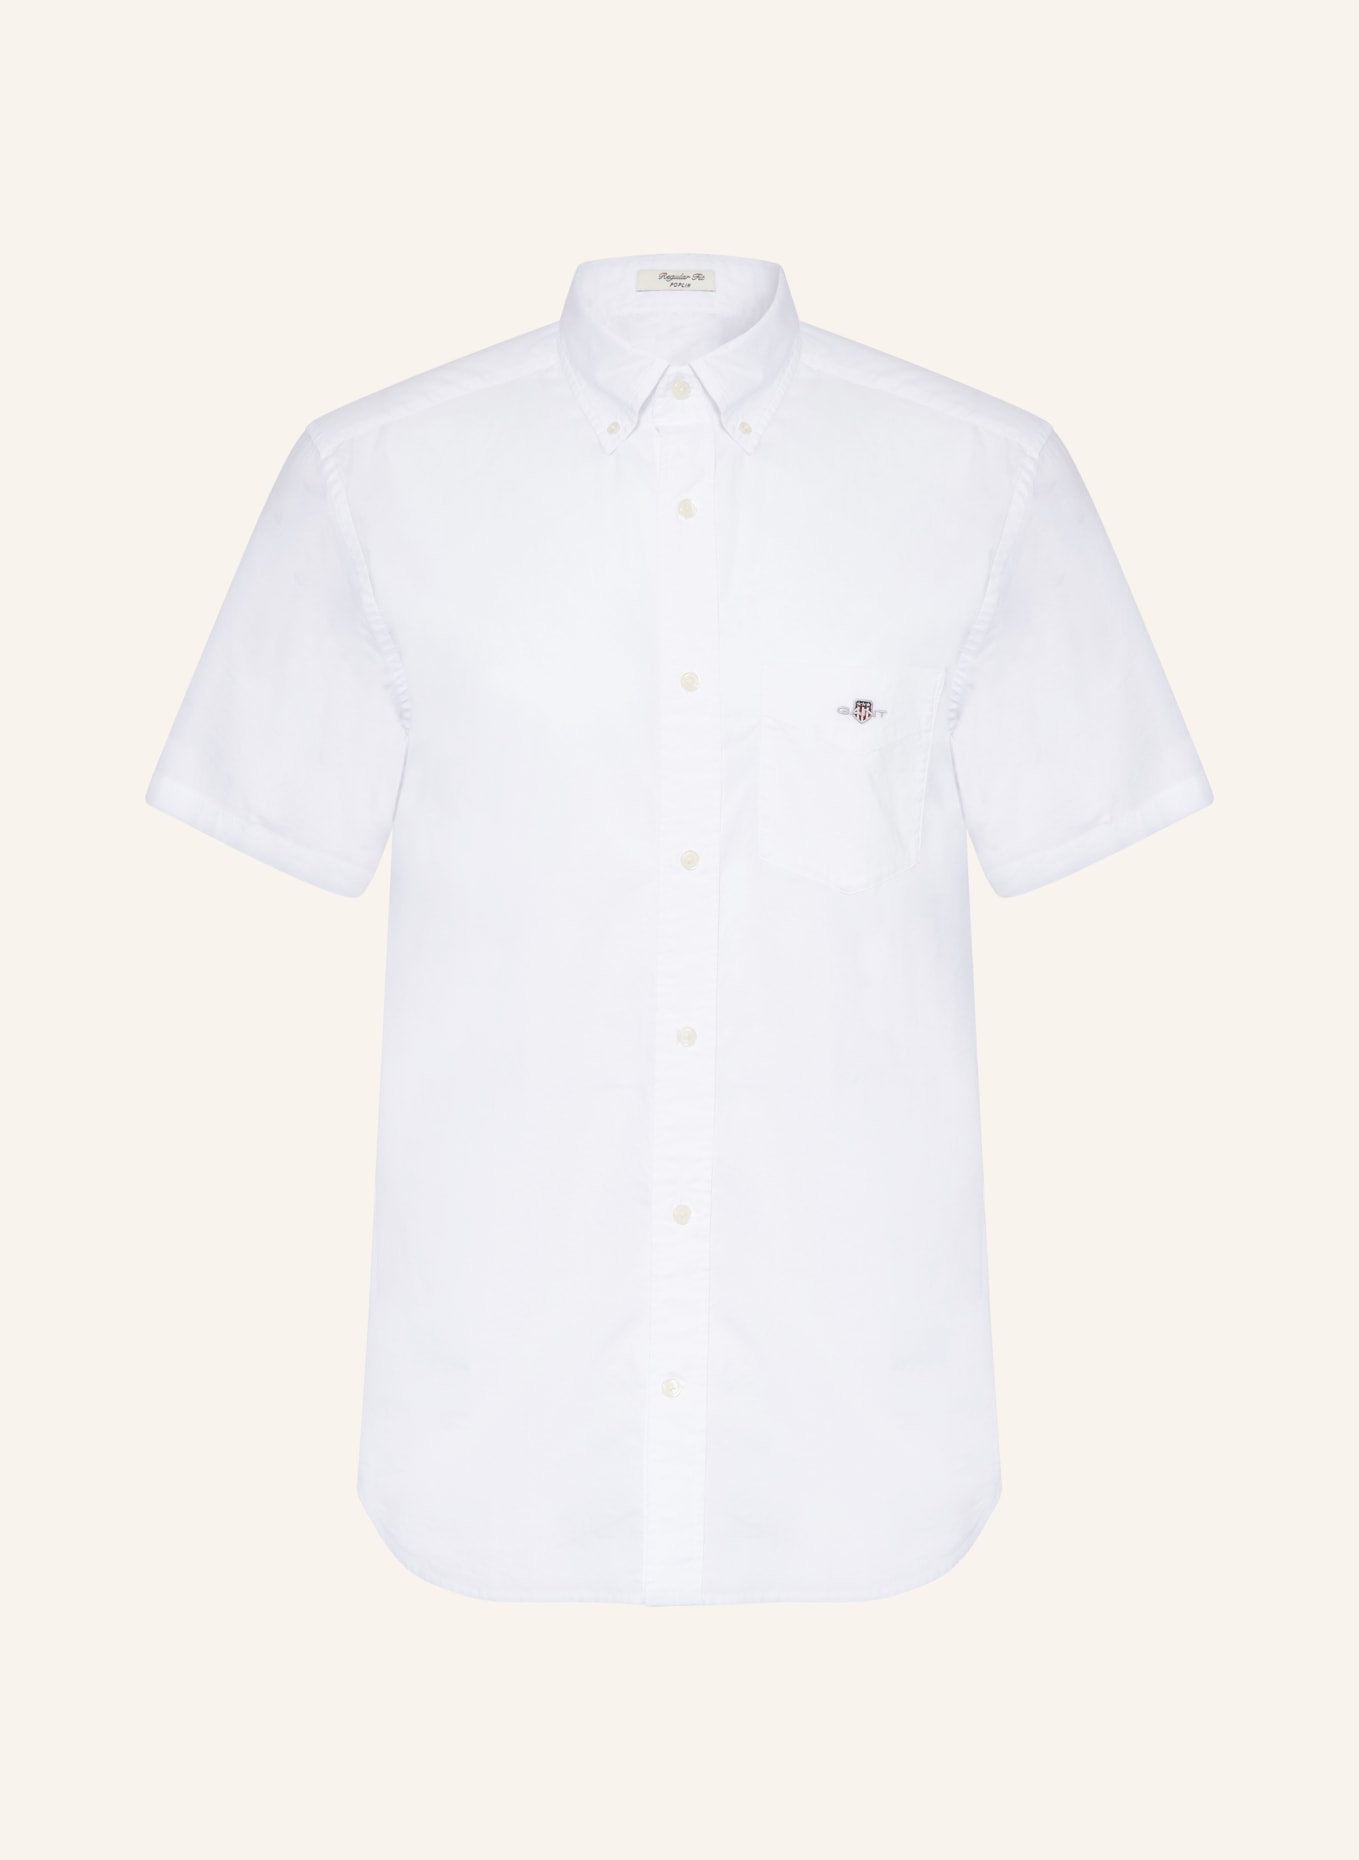 GANT Short sleeve shirt comfort fit, Color: WHITE (Image 1)